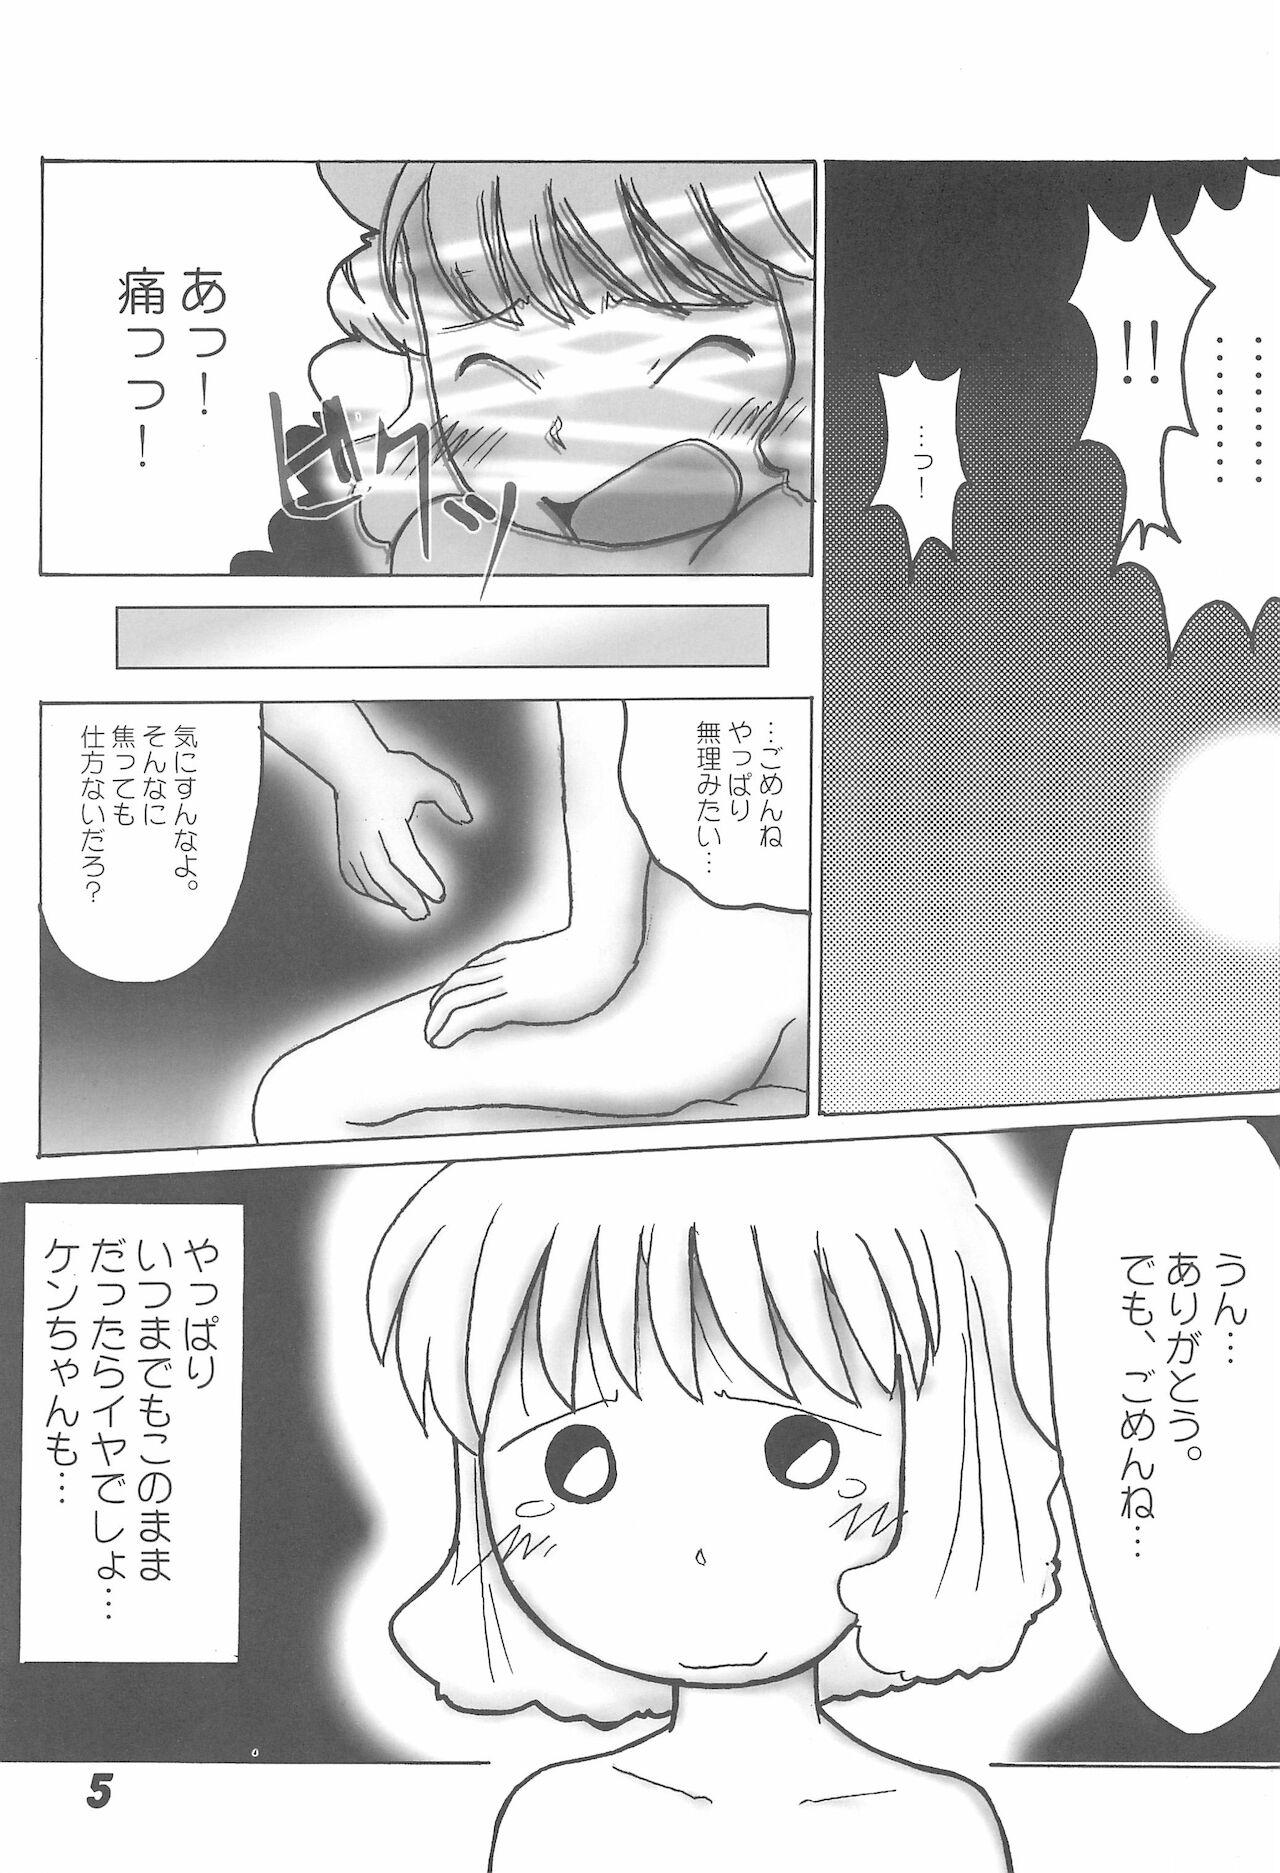 Bra Zettai nandakara ne... - Azuki-chan Doctor - Page 5